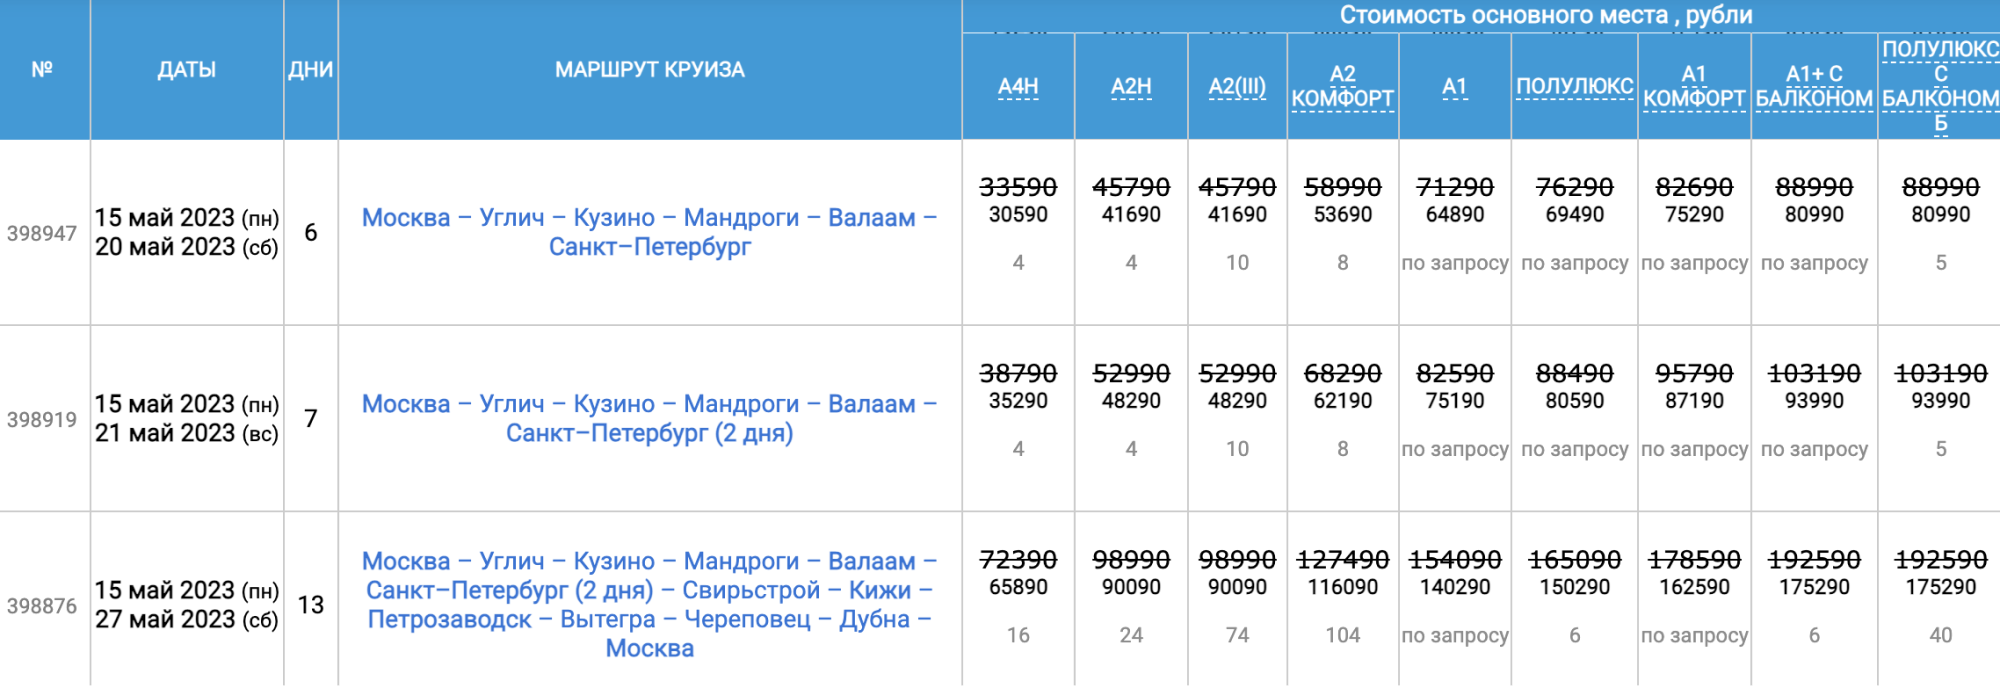 Круиз с 15 мая 2023 года из Москвы в Петербург на теплоходе «Лебединое озеро» в два с лишним раза дешевле, чем туда и обратно. Источник: infoflot.com